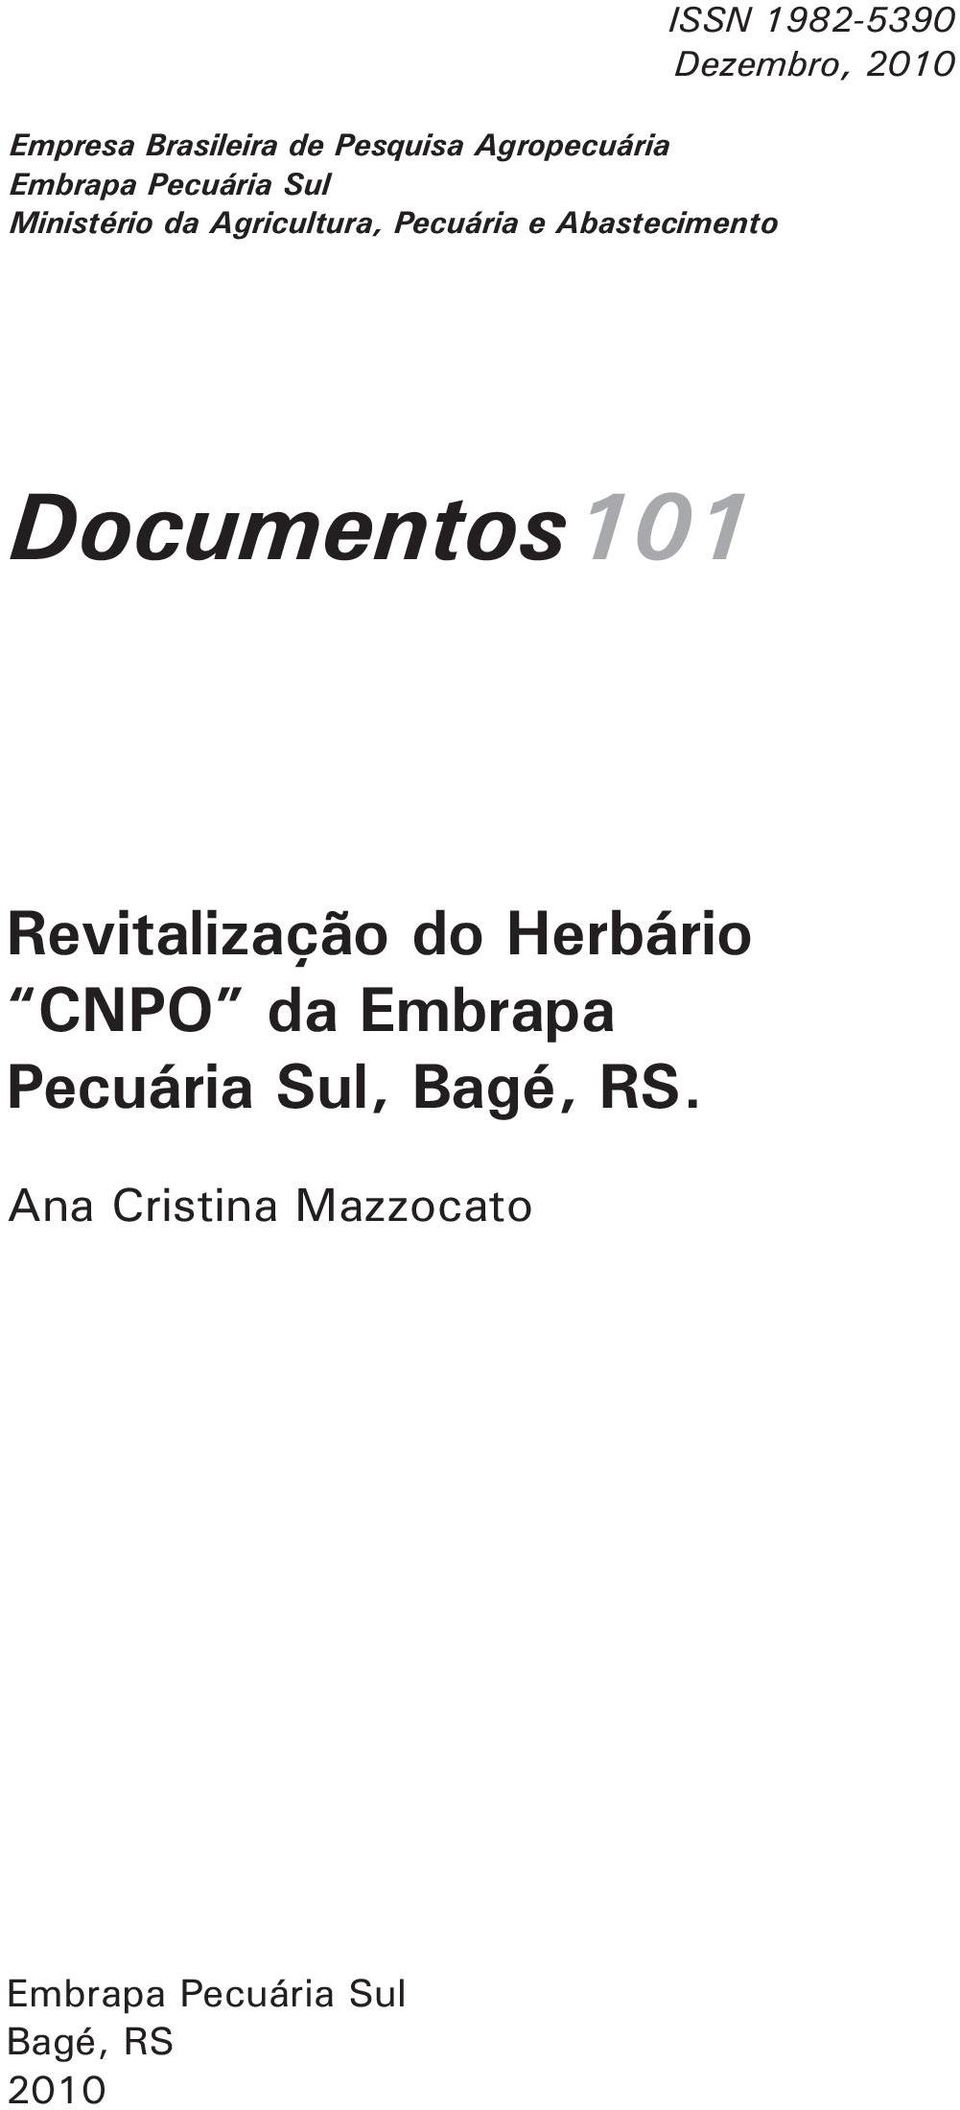 Dezembro, 2010 Documentos101 Revitalização do Herbário CNPO da Embrapa